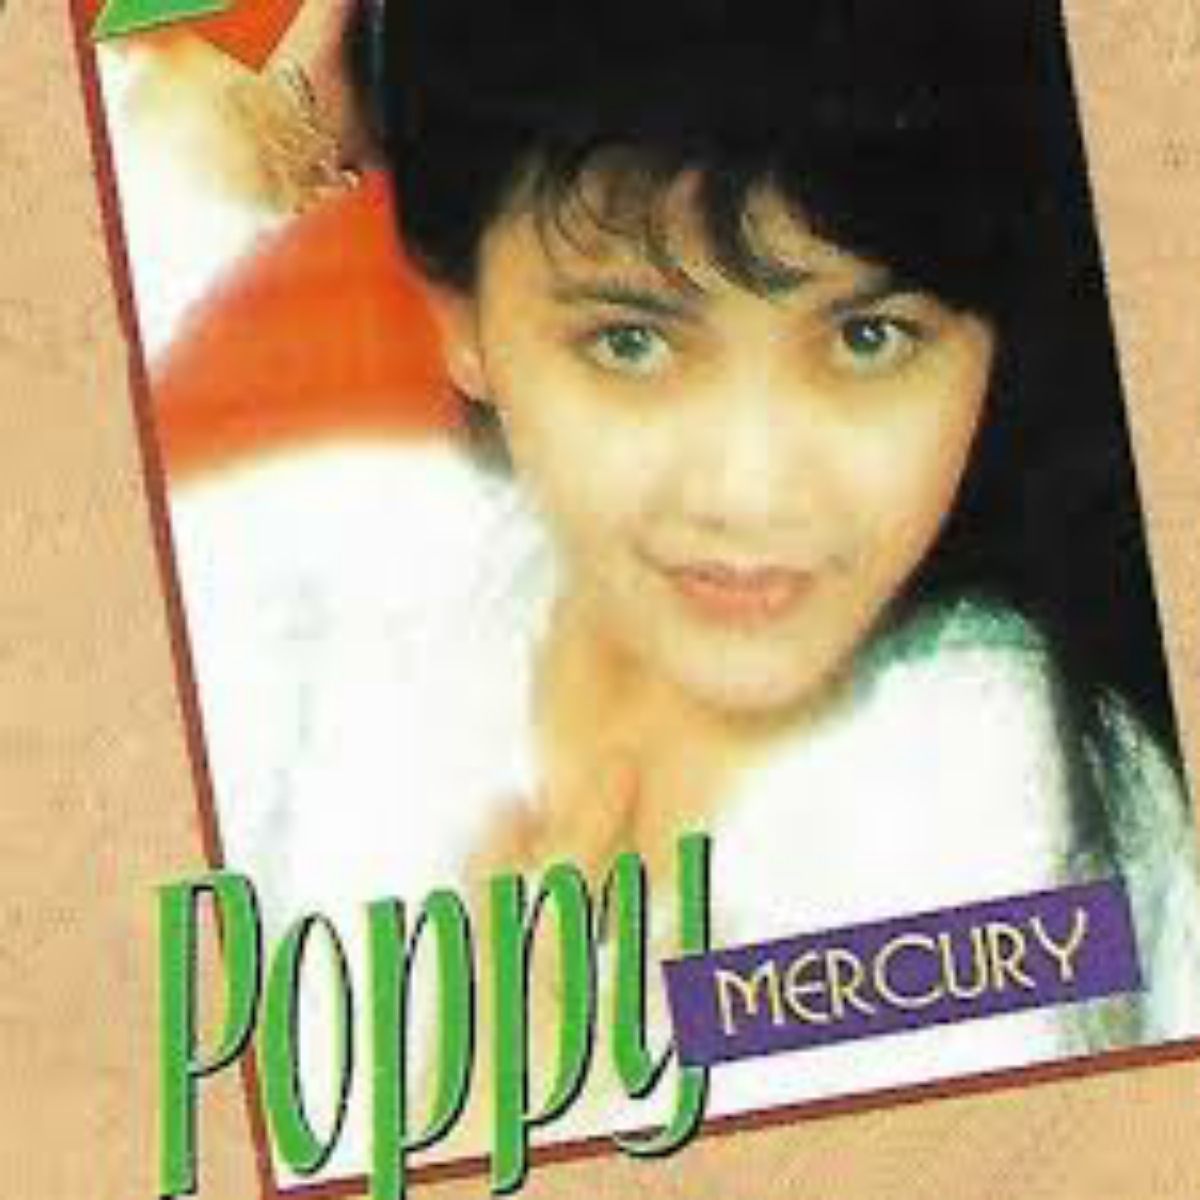 Set Poppy Mercury Cover mp3